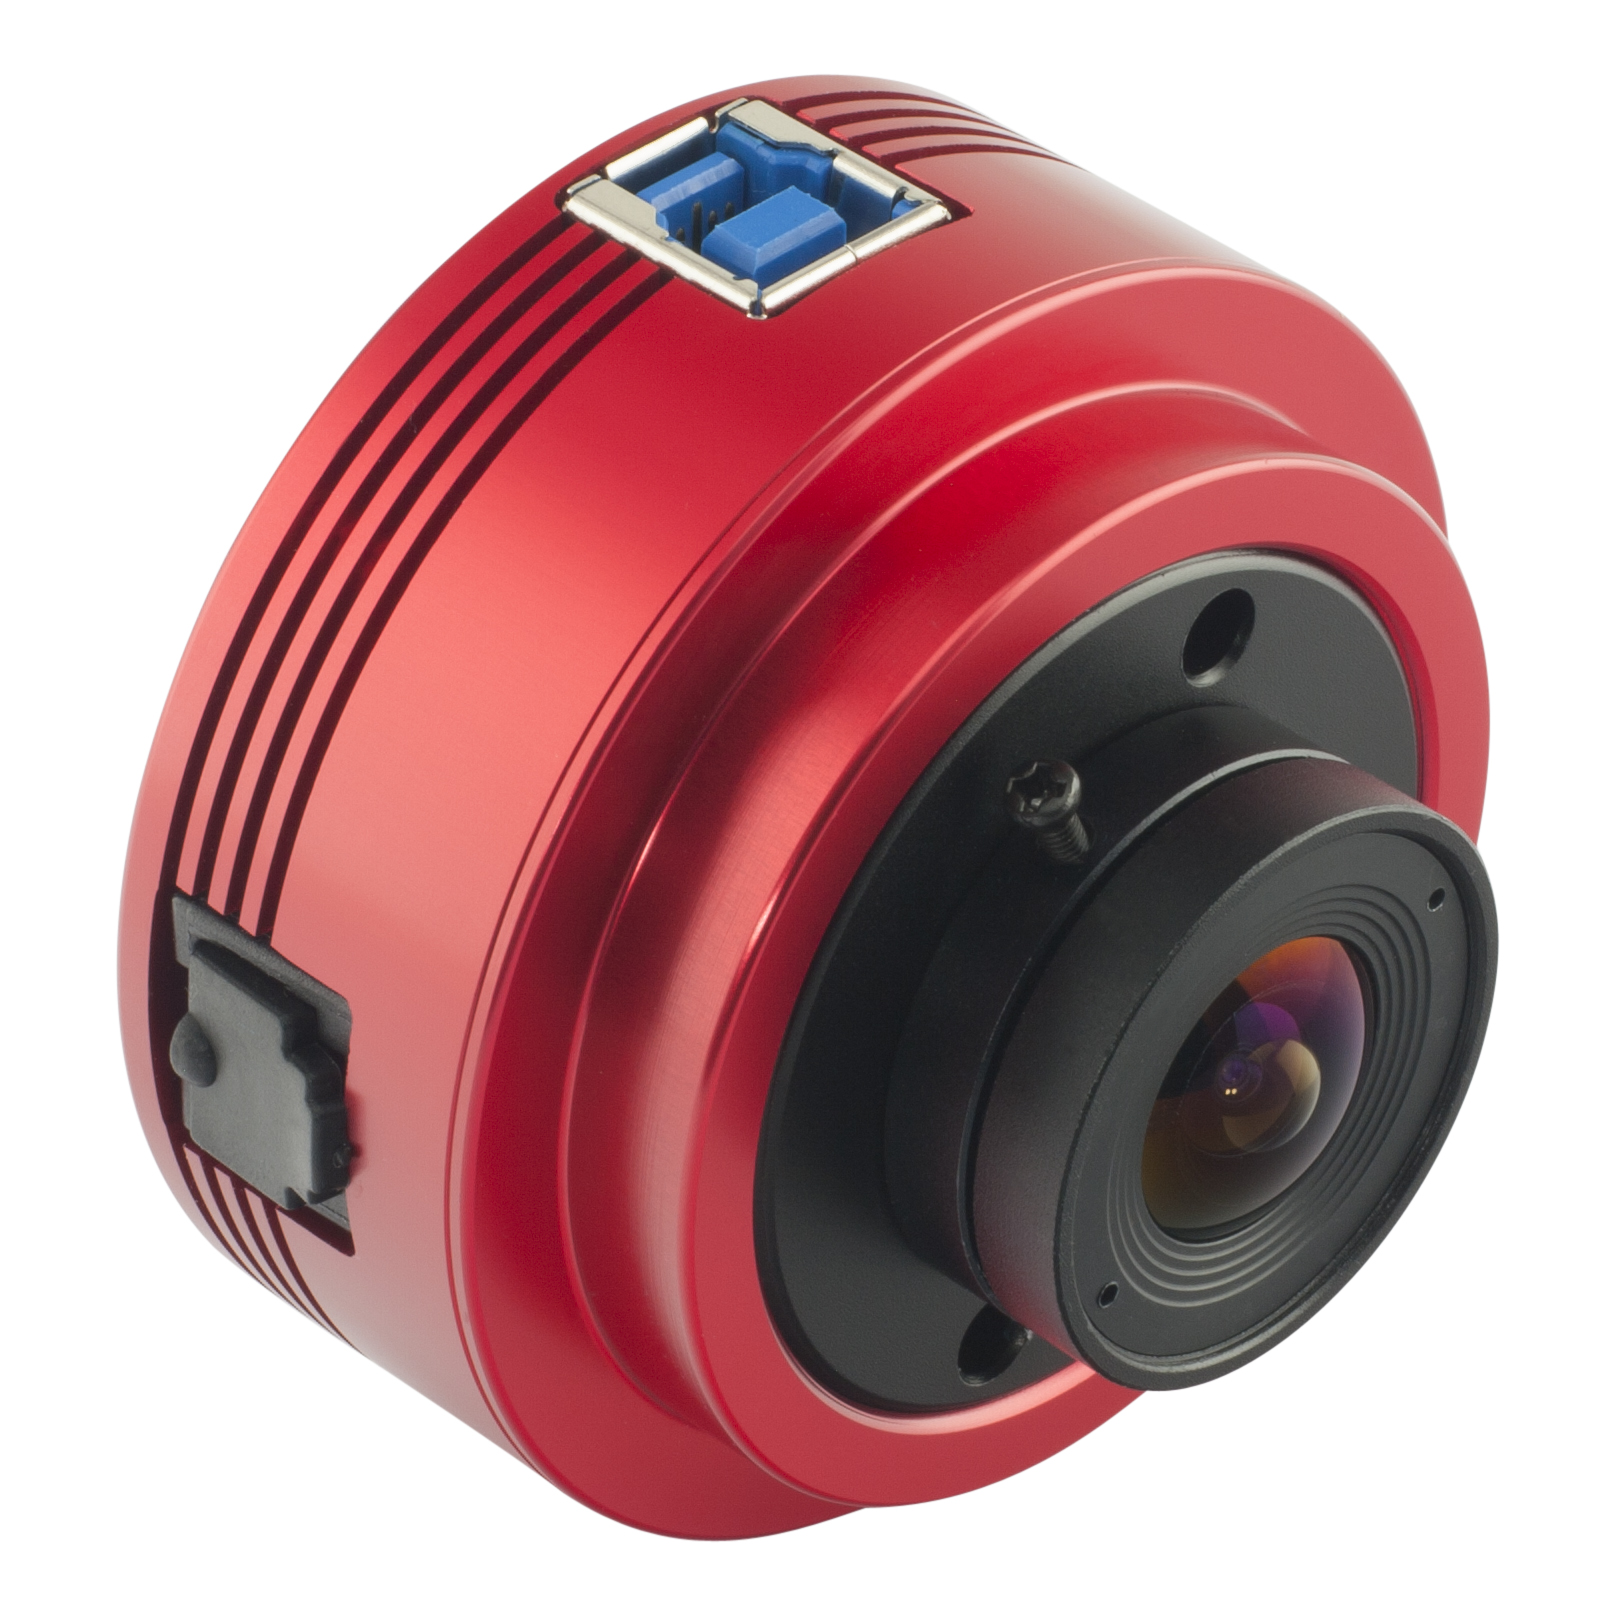 ZWO ASI 120MC-S USB 3.0 Colour Camera